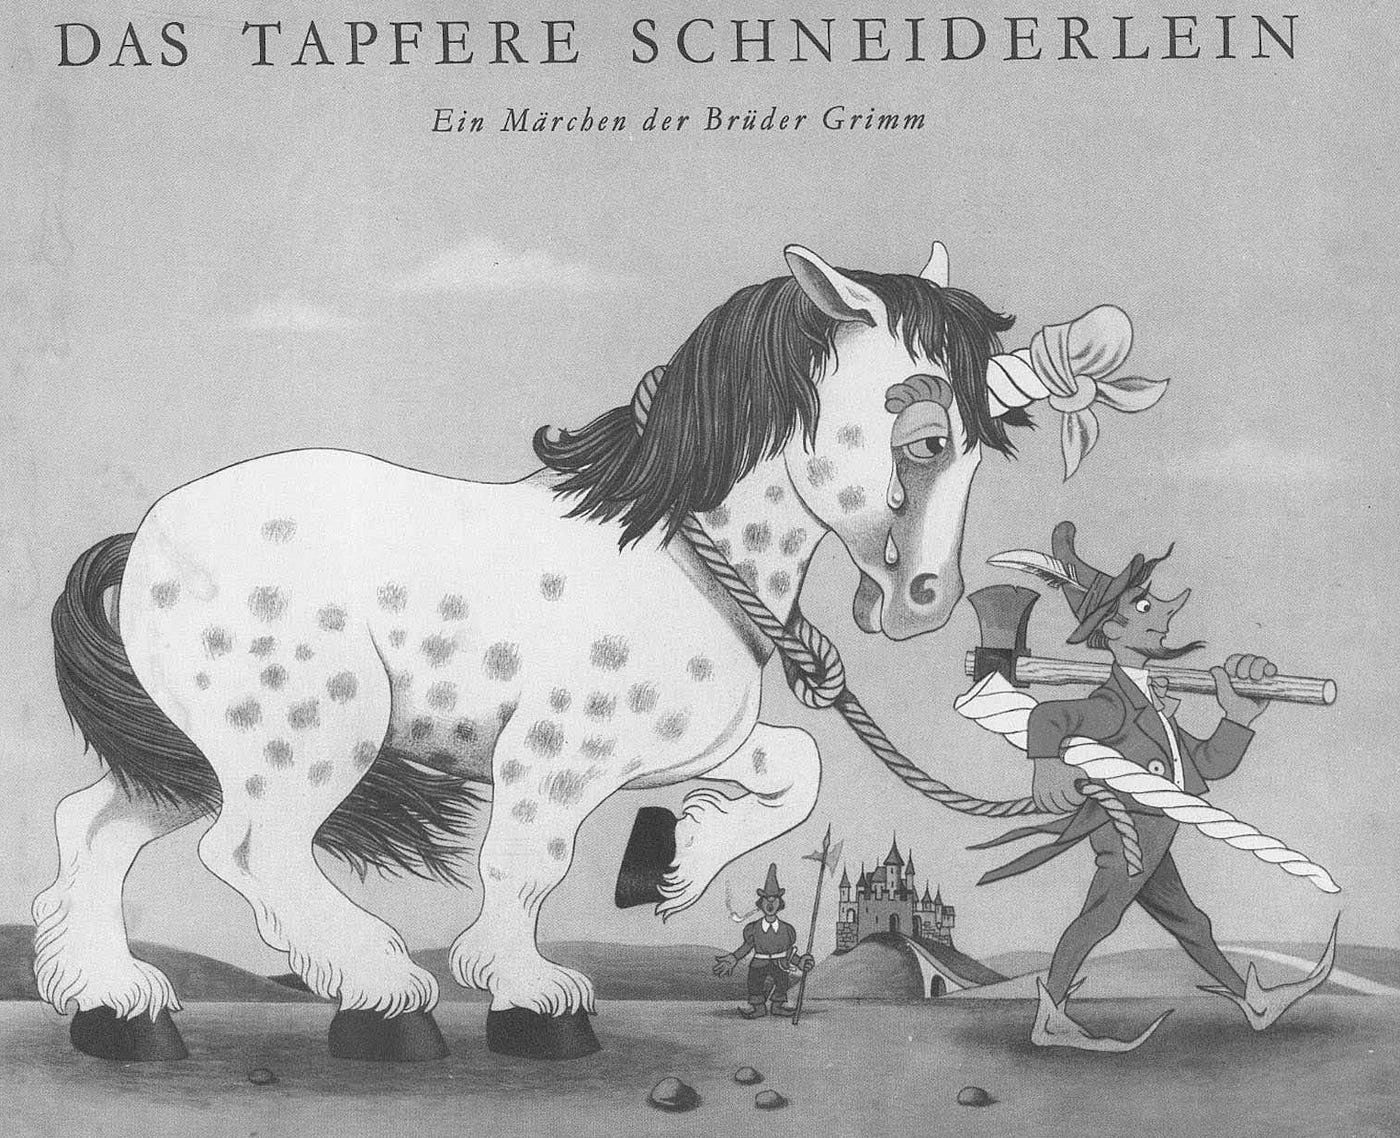 Das Tapfere Schneiderlein. Eine Märchenanalyse | by Peter Fritz Walter |  Sex, Science, Psychoanalysis, and Evolution | Medium